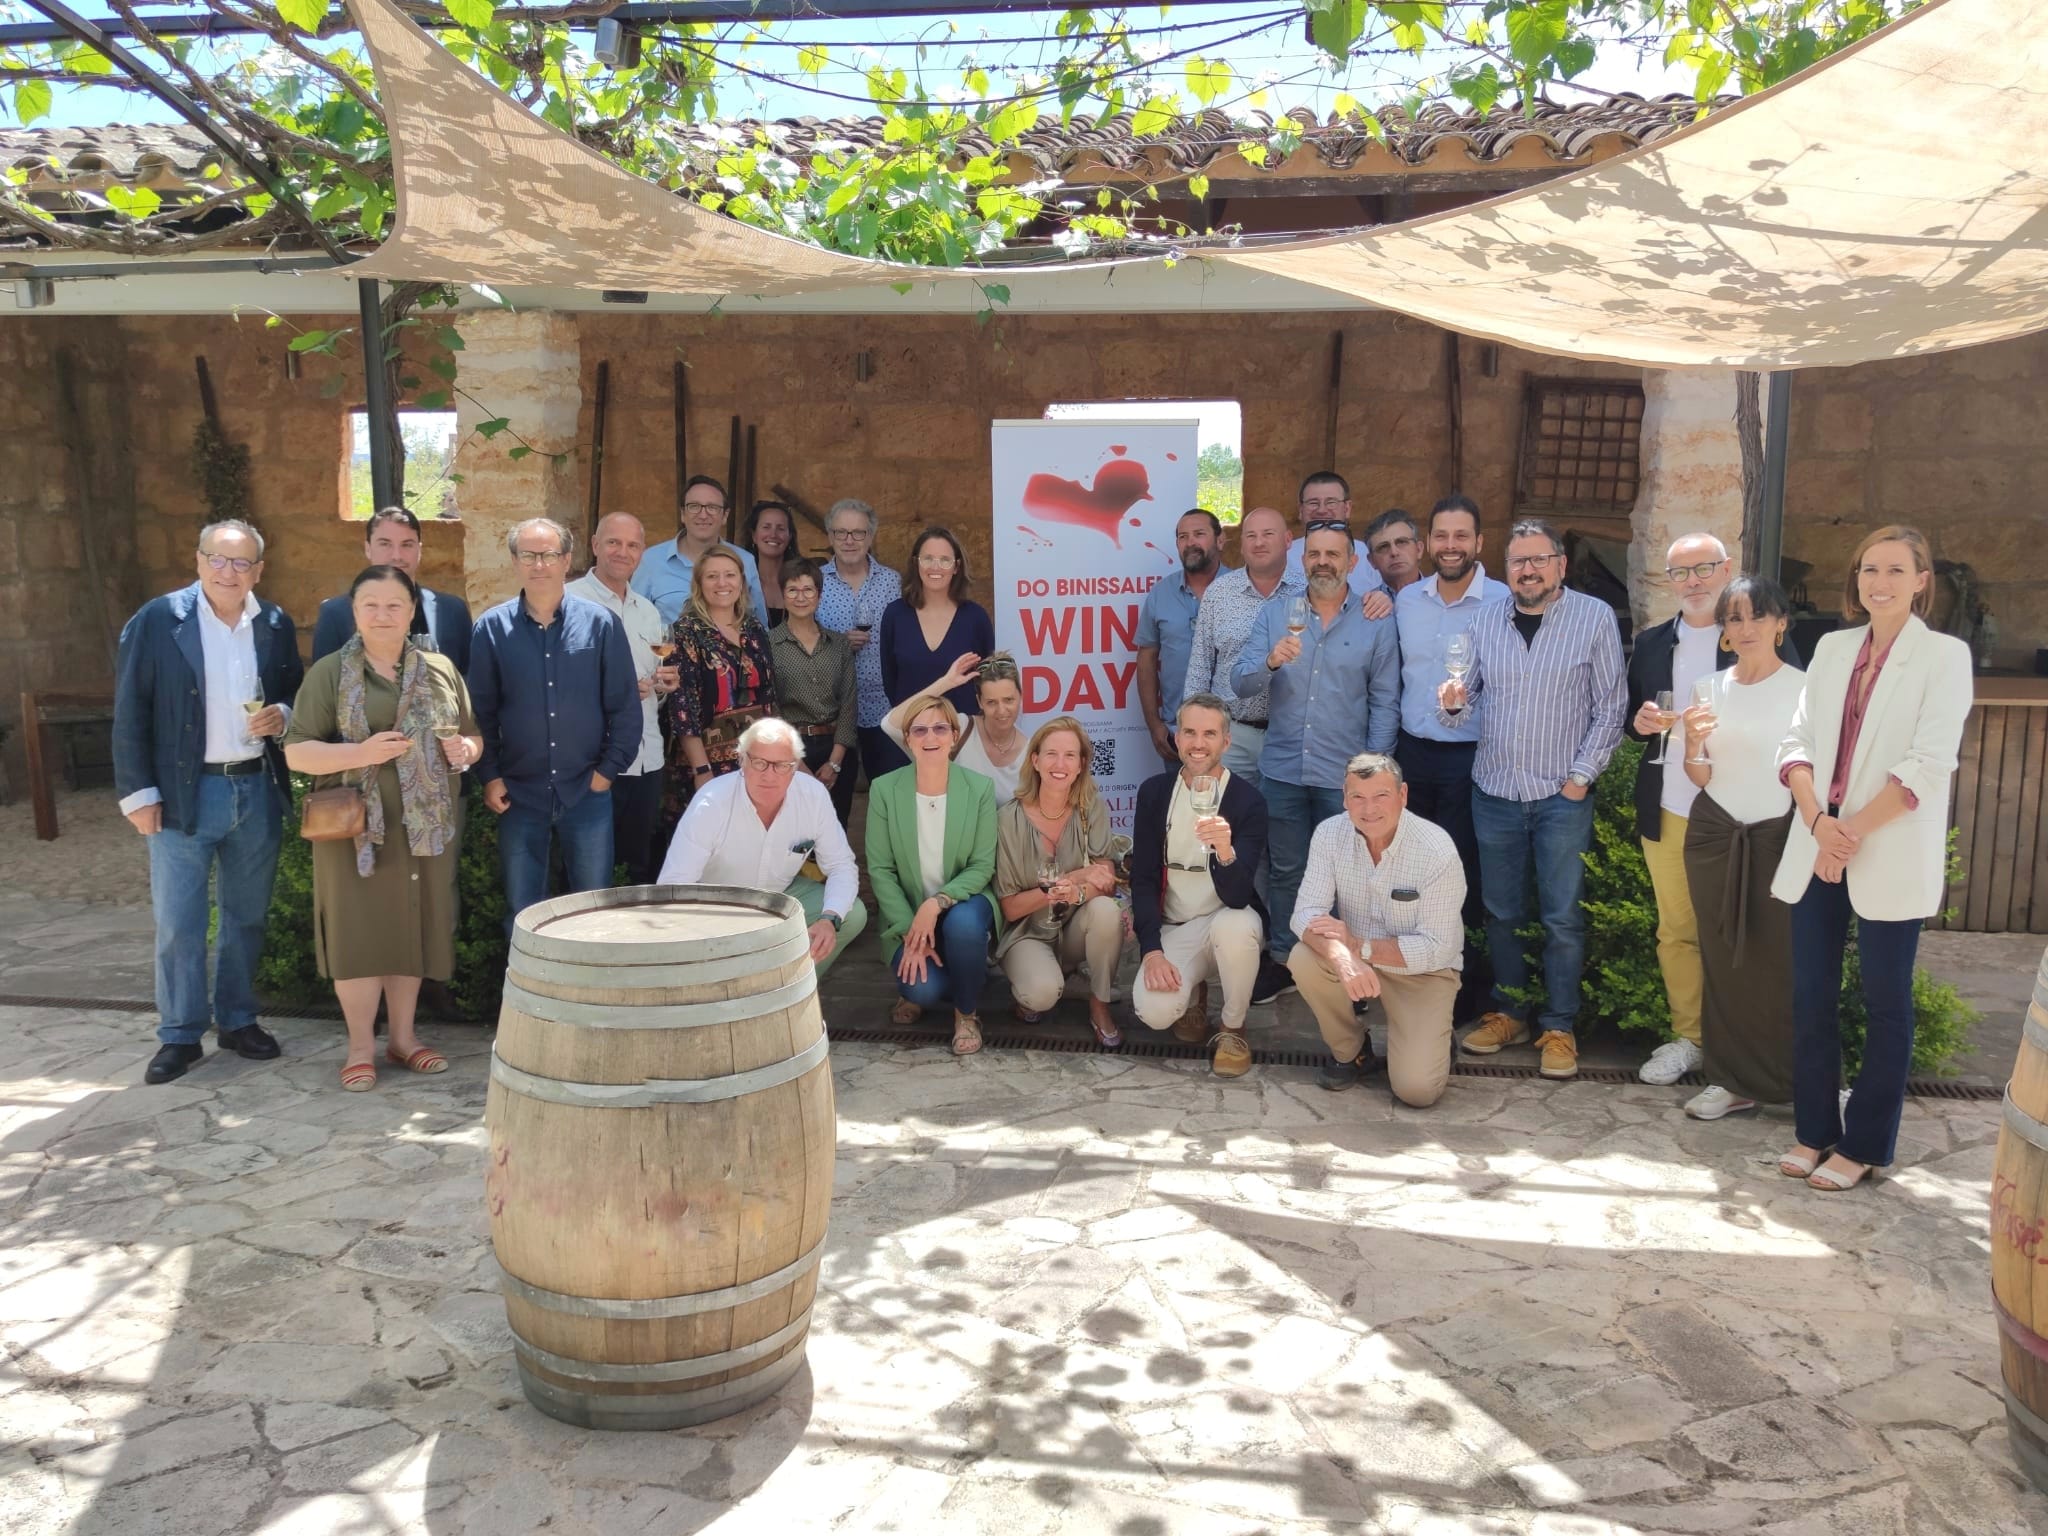 Es presenta la 10ª edició de WINE DAYS-DO BINISSALEM, a l’espai d’Es Cos de Bodegas José L. Ferrer. - Notícies - Illes Balears - Productes agroalimentaris, denominacions d'origen i gastronomia balear